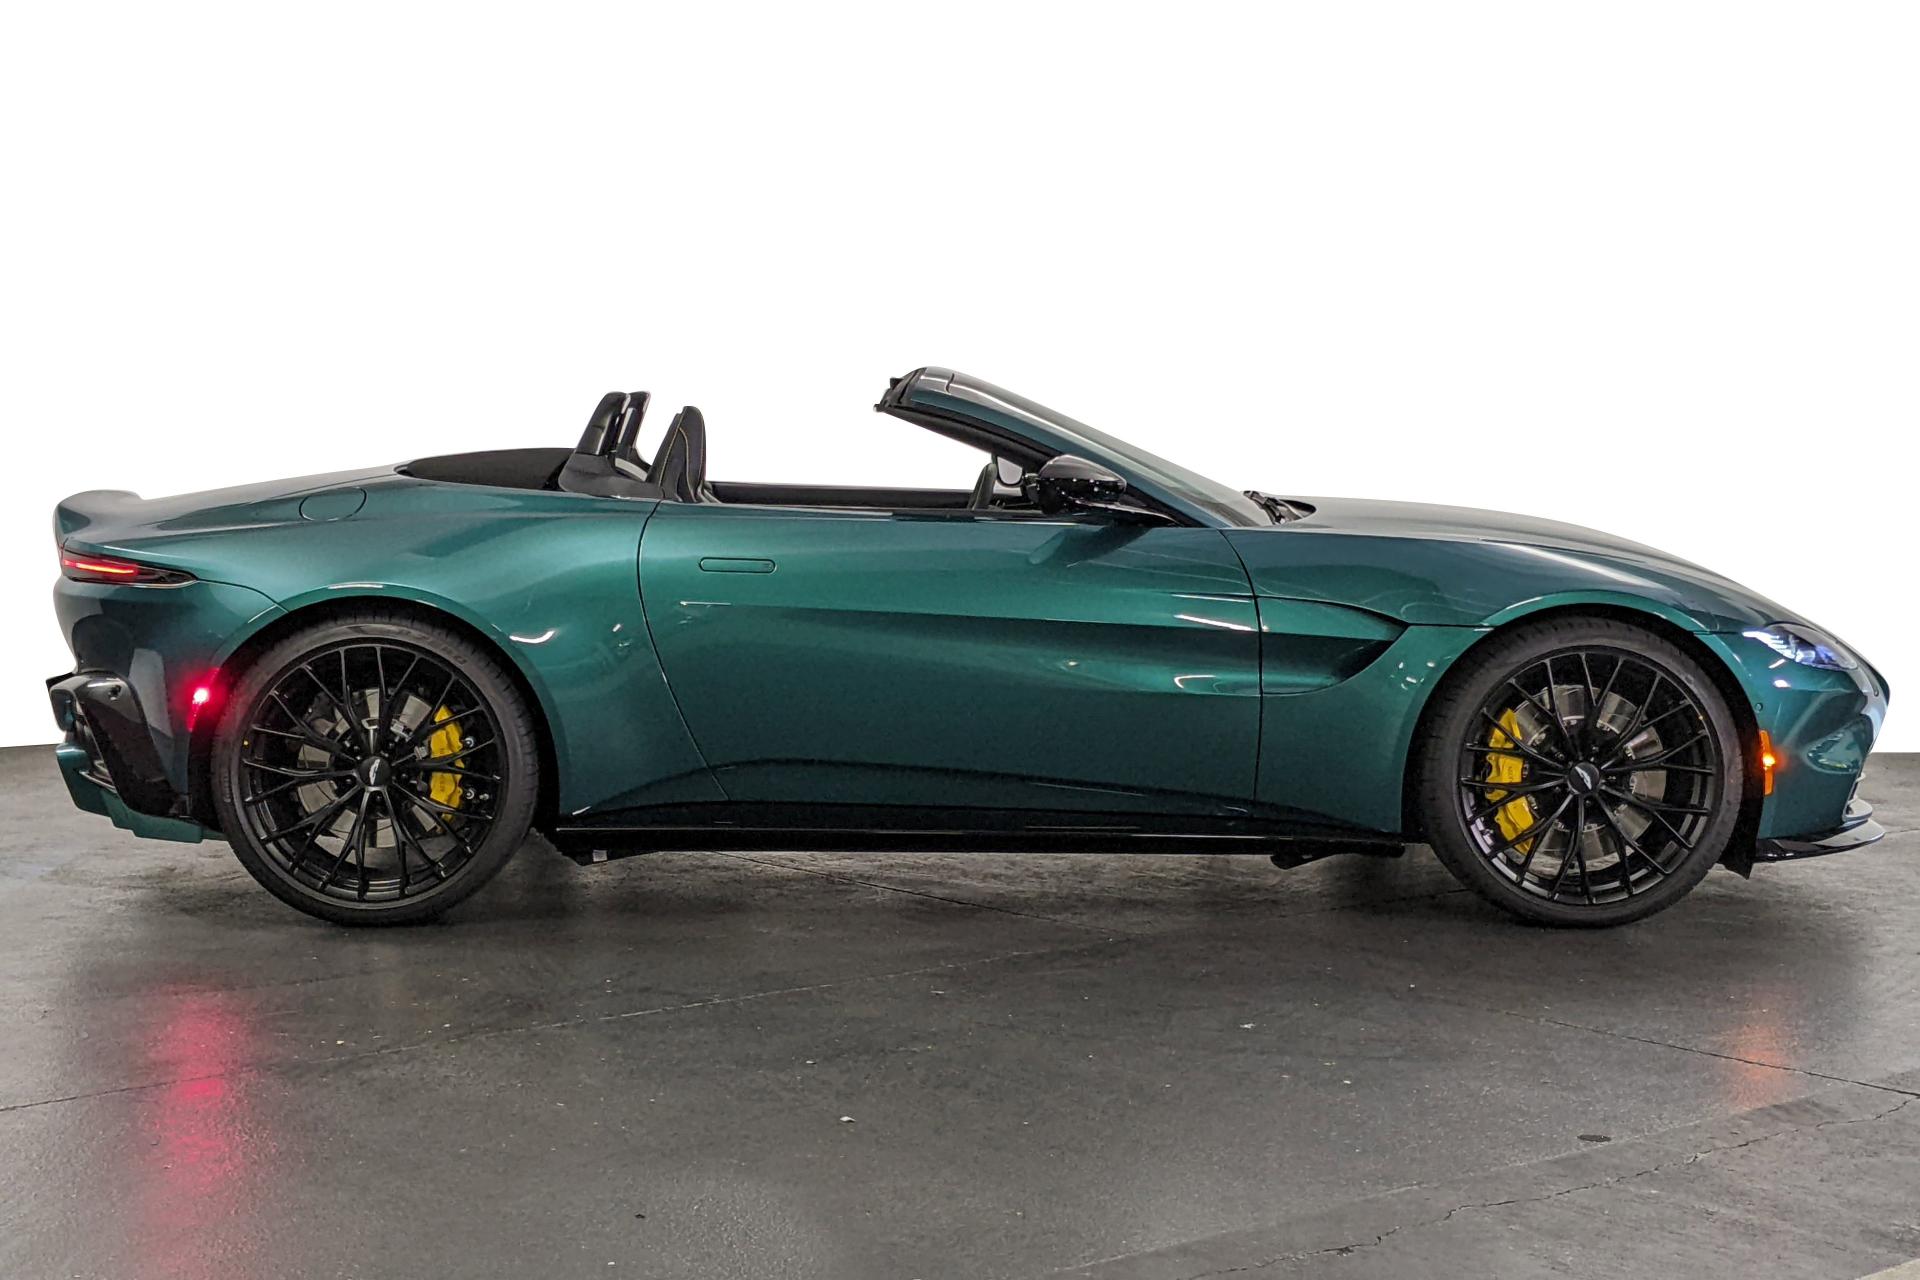 2022 Aston Martin Vantage Green - £209,990